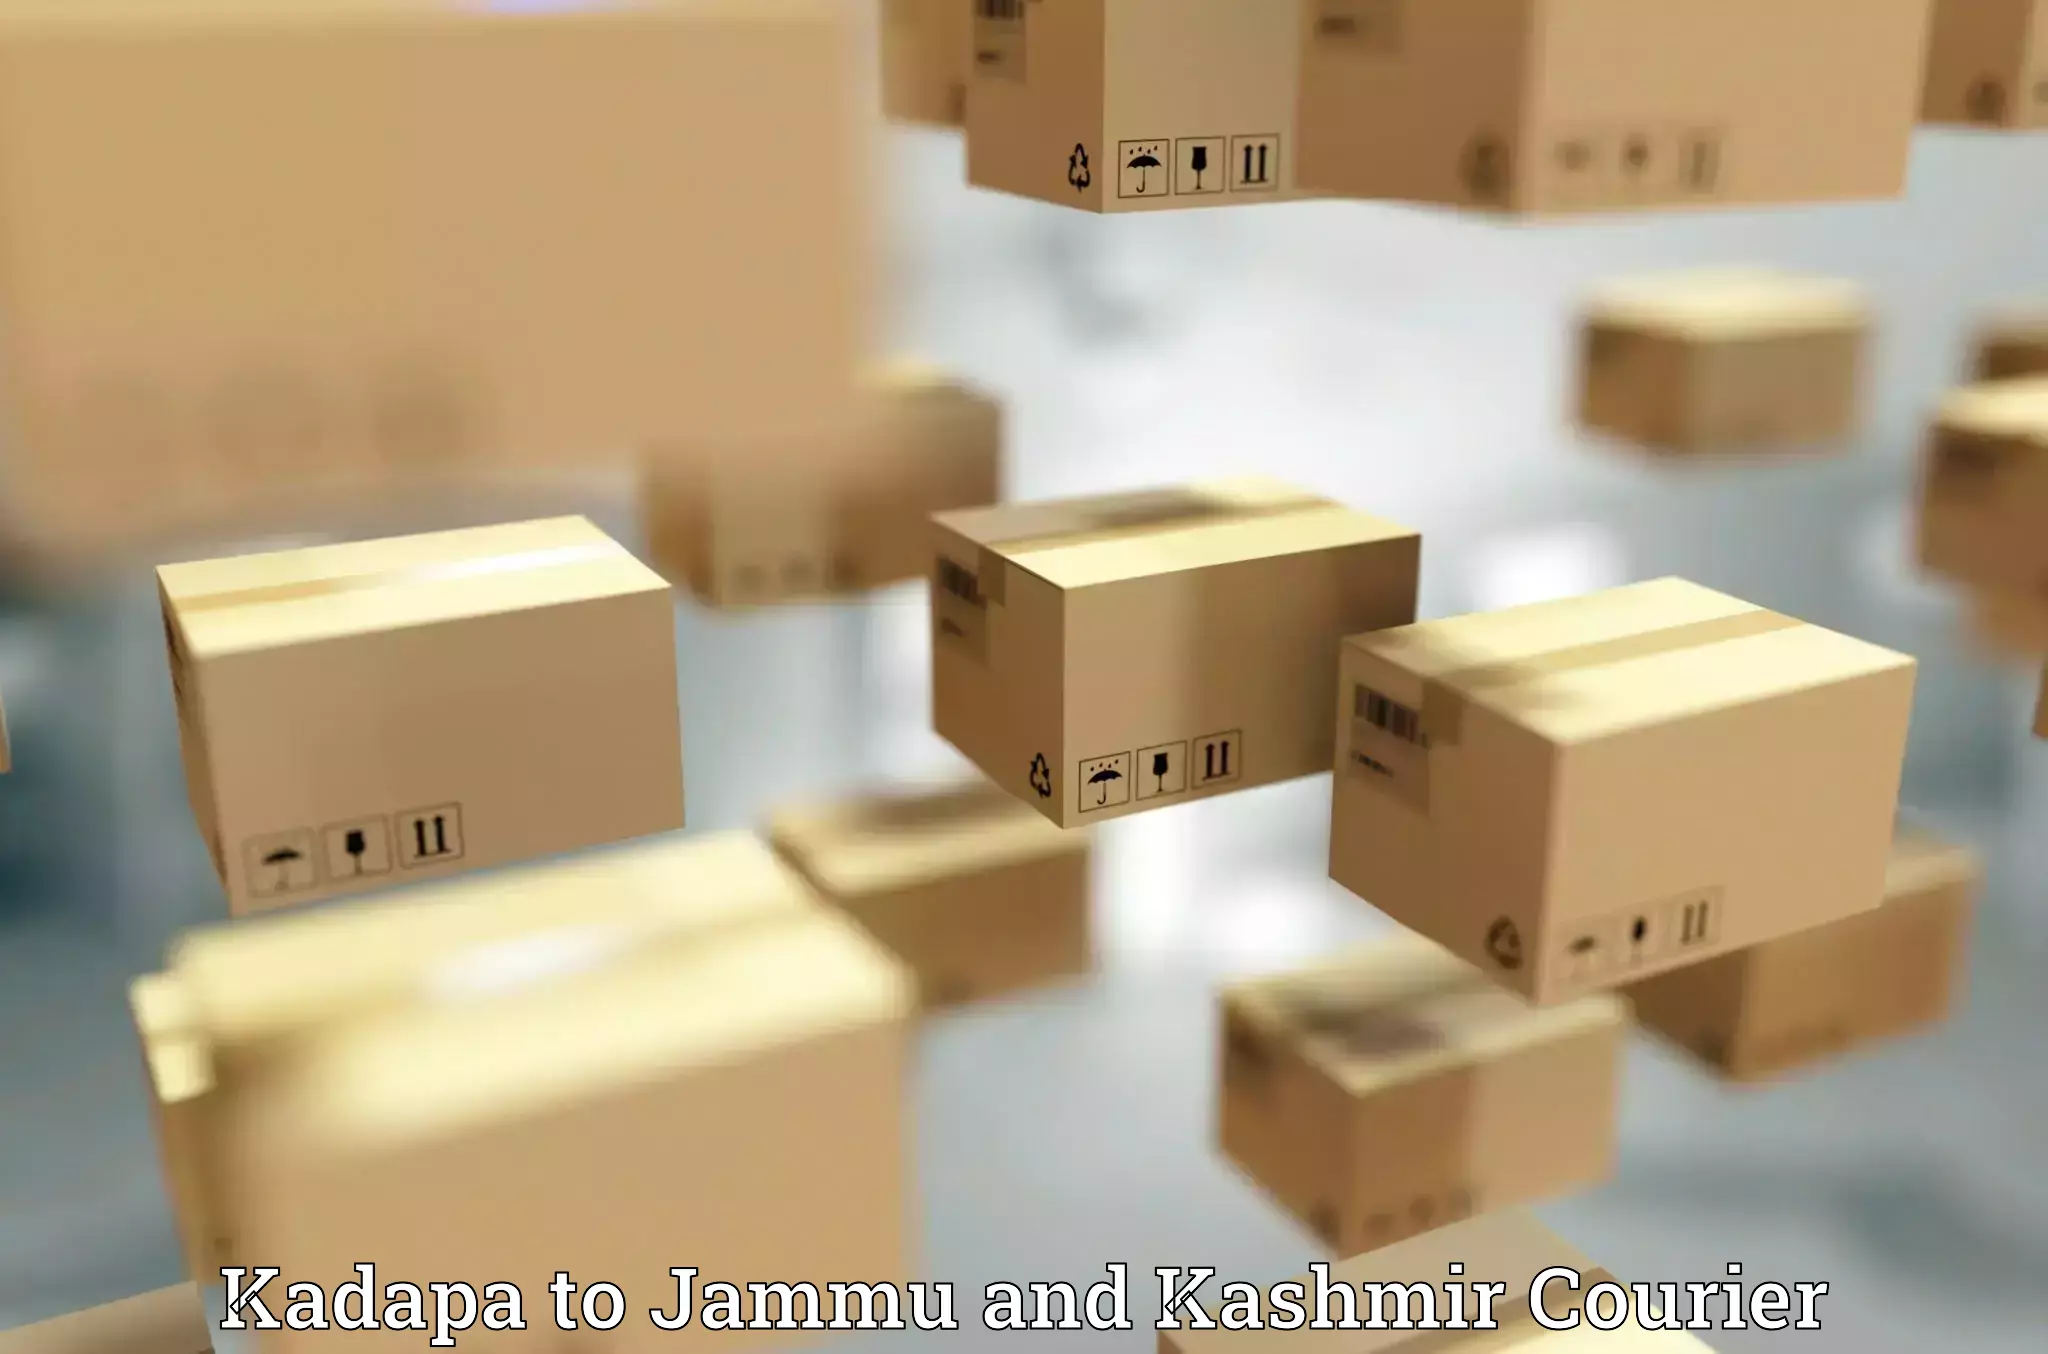 Shipping and handling Kadapa to Srinagar Kashmir